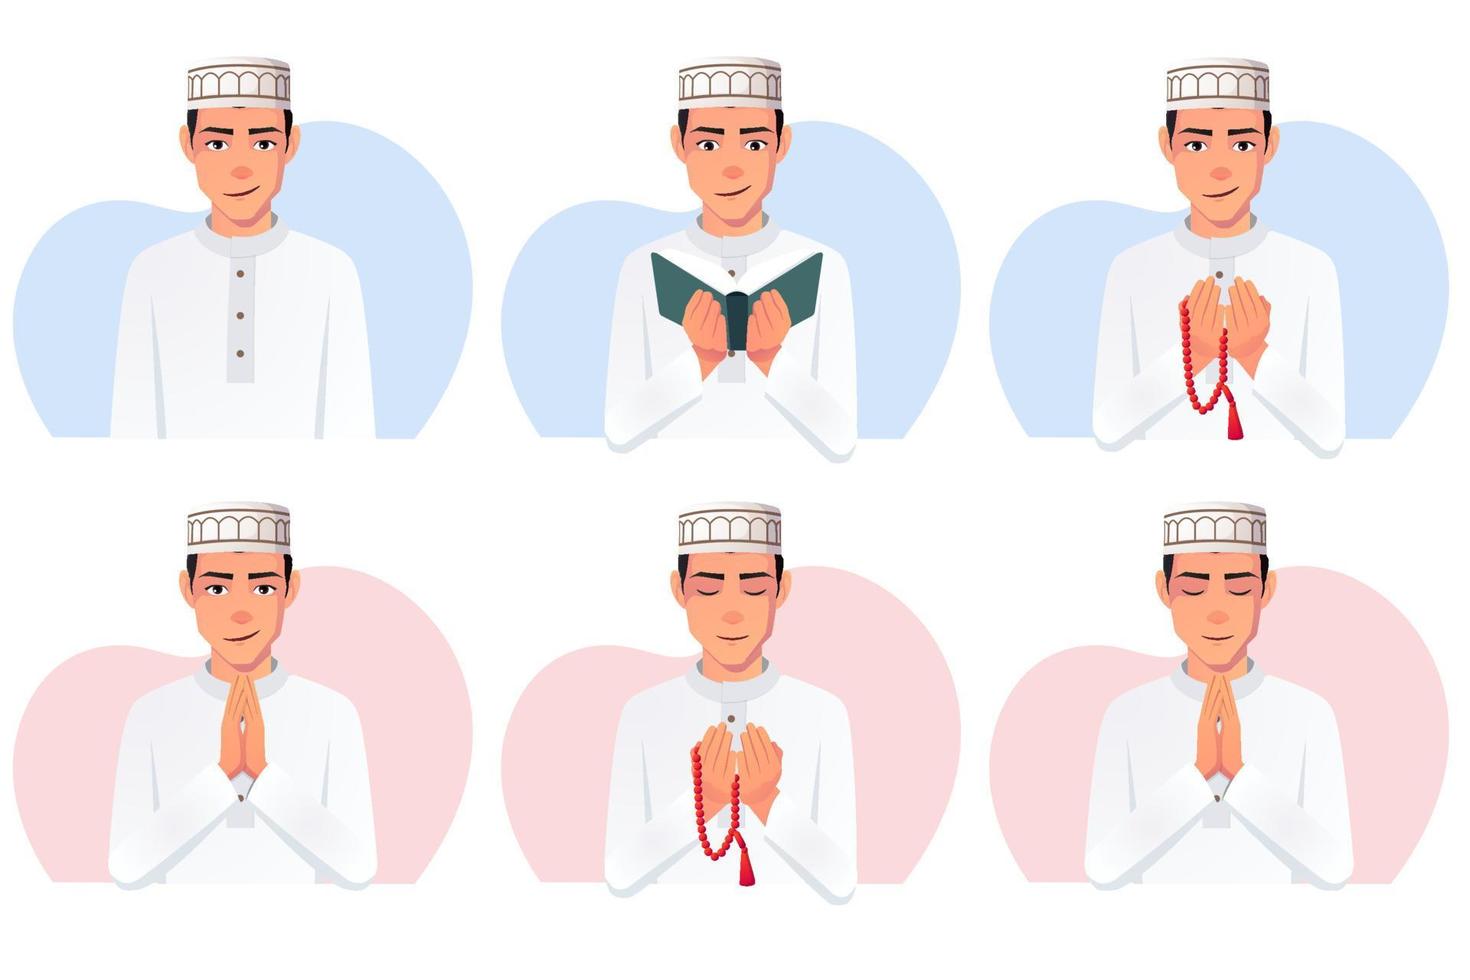 Muslim Man White Thobe Dress, wearing taqiyah hat Reading Quran, Praying with pearls, smiling Vector illustration.